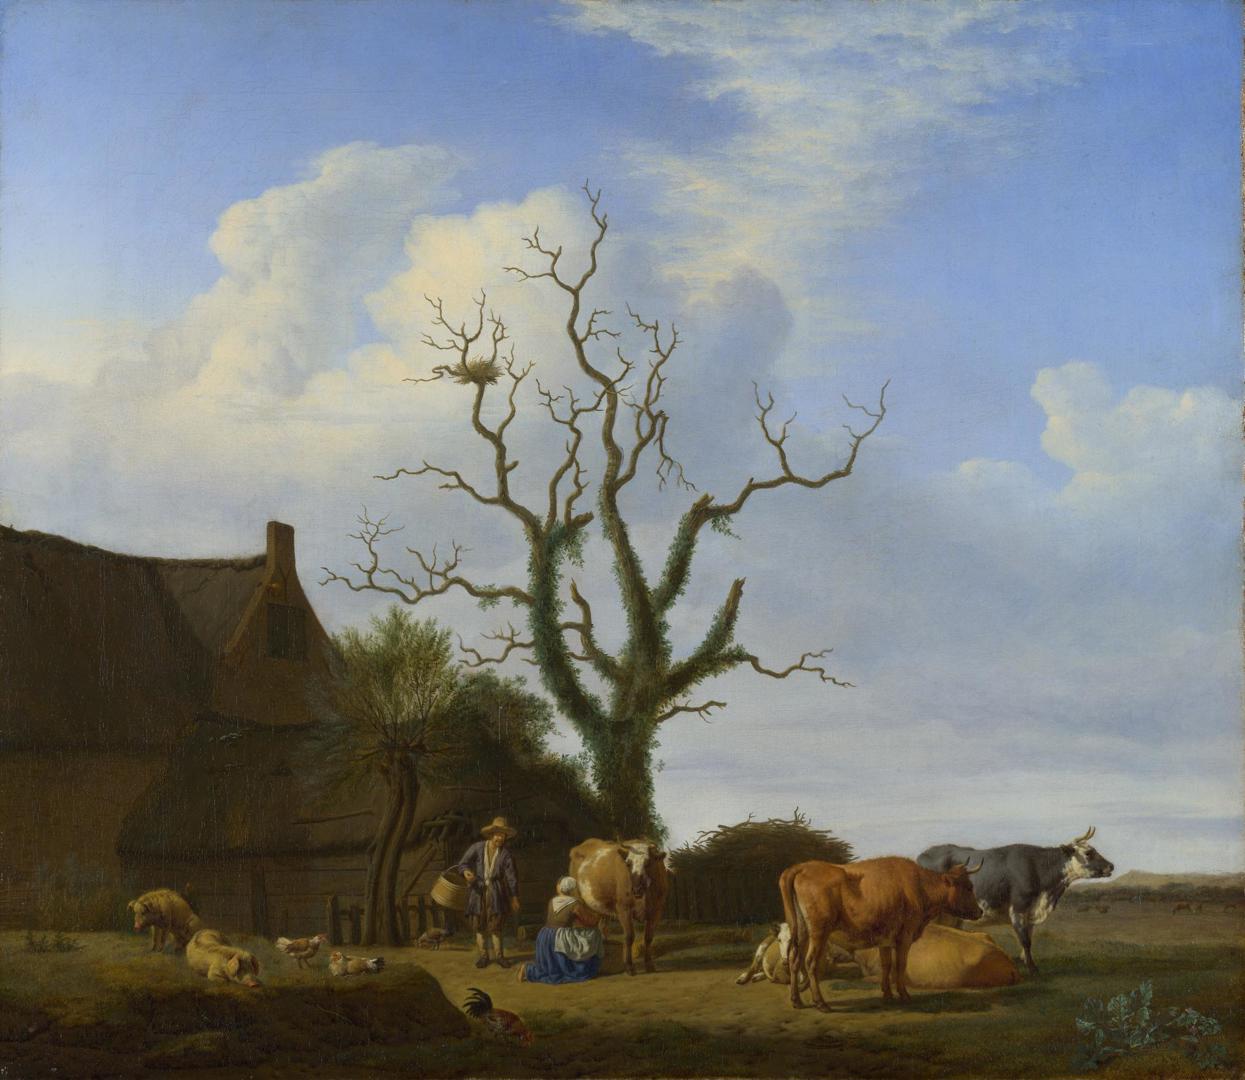 A Farm with a Dead Tree by Adriaen van de Velde